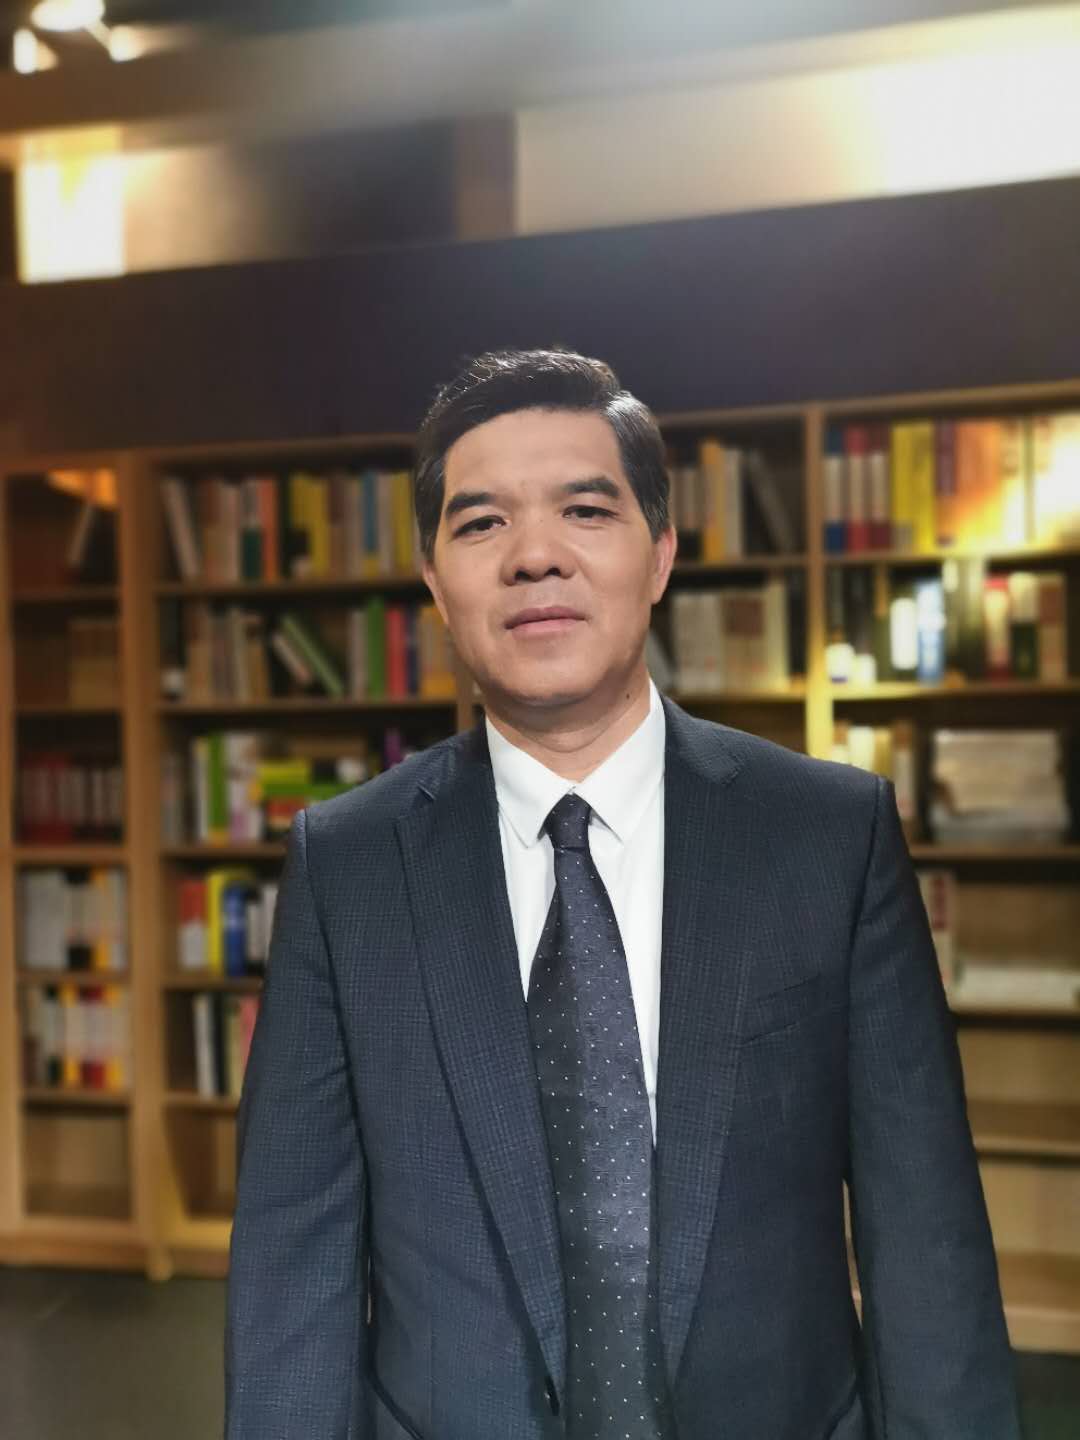 黄汉权|专家委员会委员